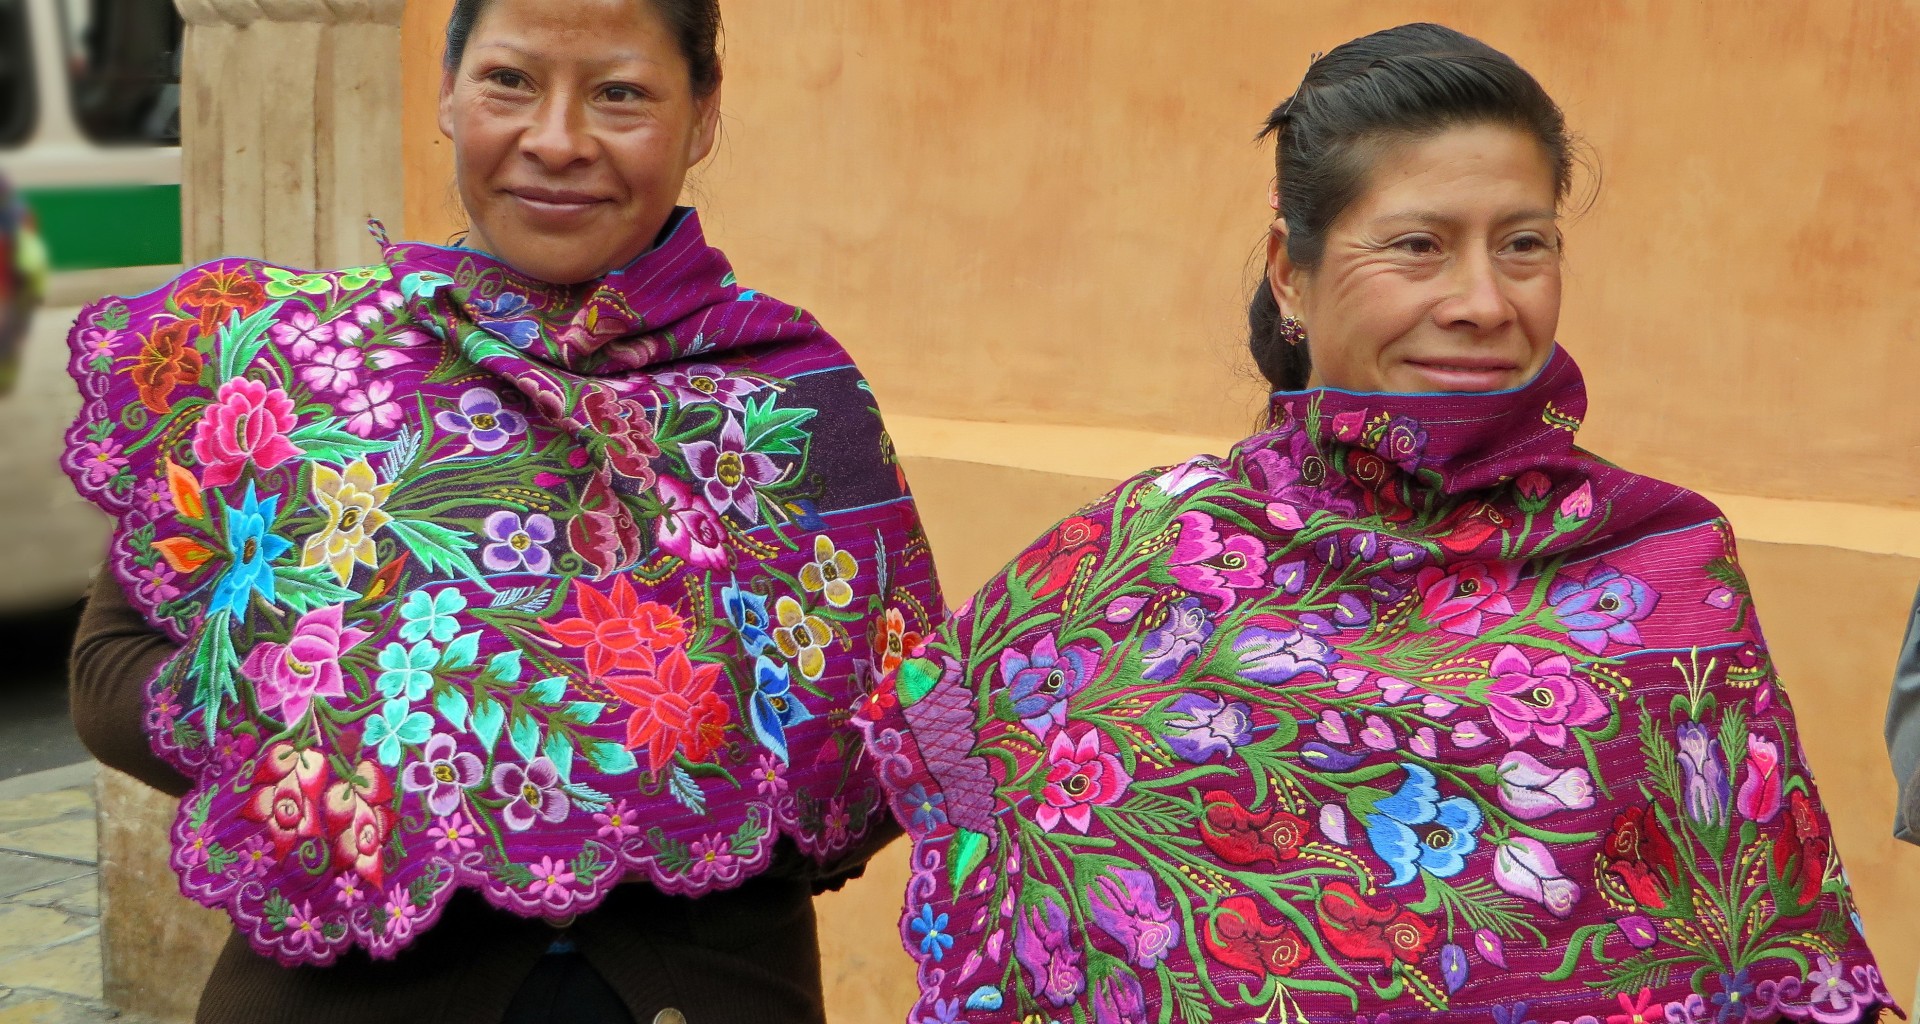 Cerca de 10 alumnos viajaron a San Cristobal de las Casas, Chiapas, para involucrarse en la manera como se rigen y organizan diversas comunidades indígenas.